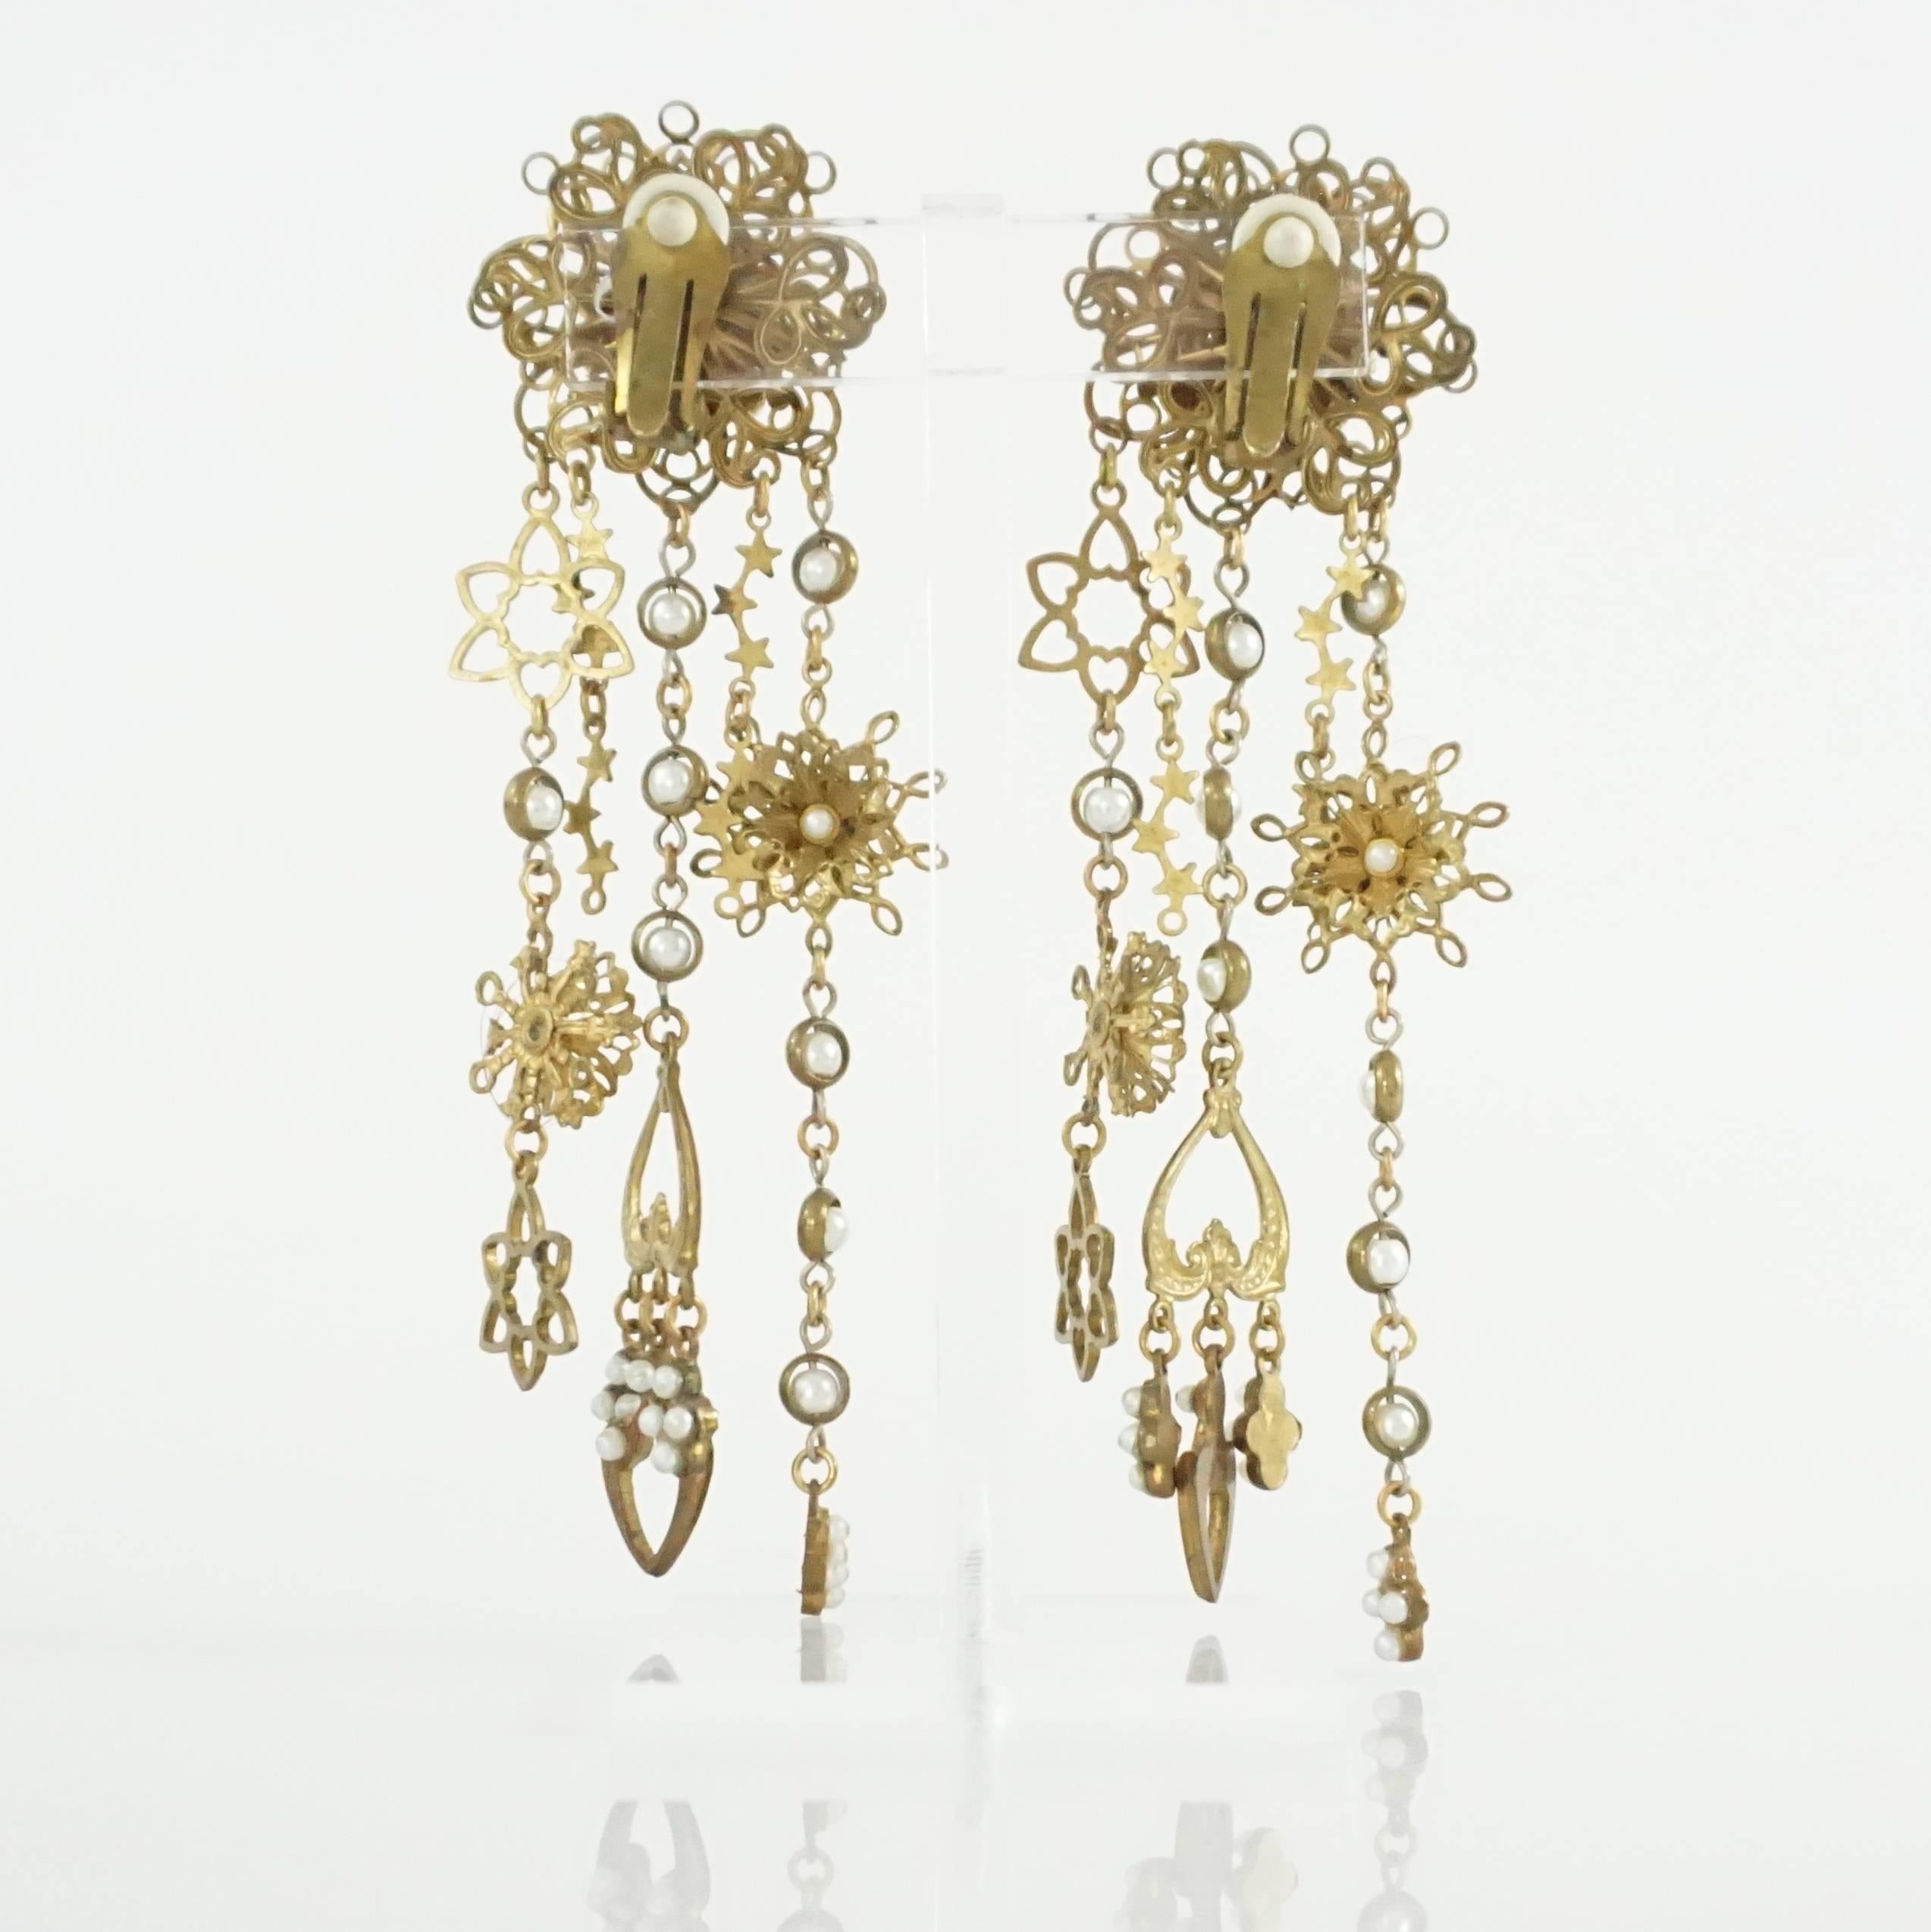 1950s earrings